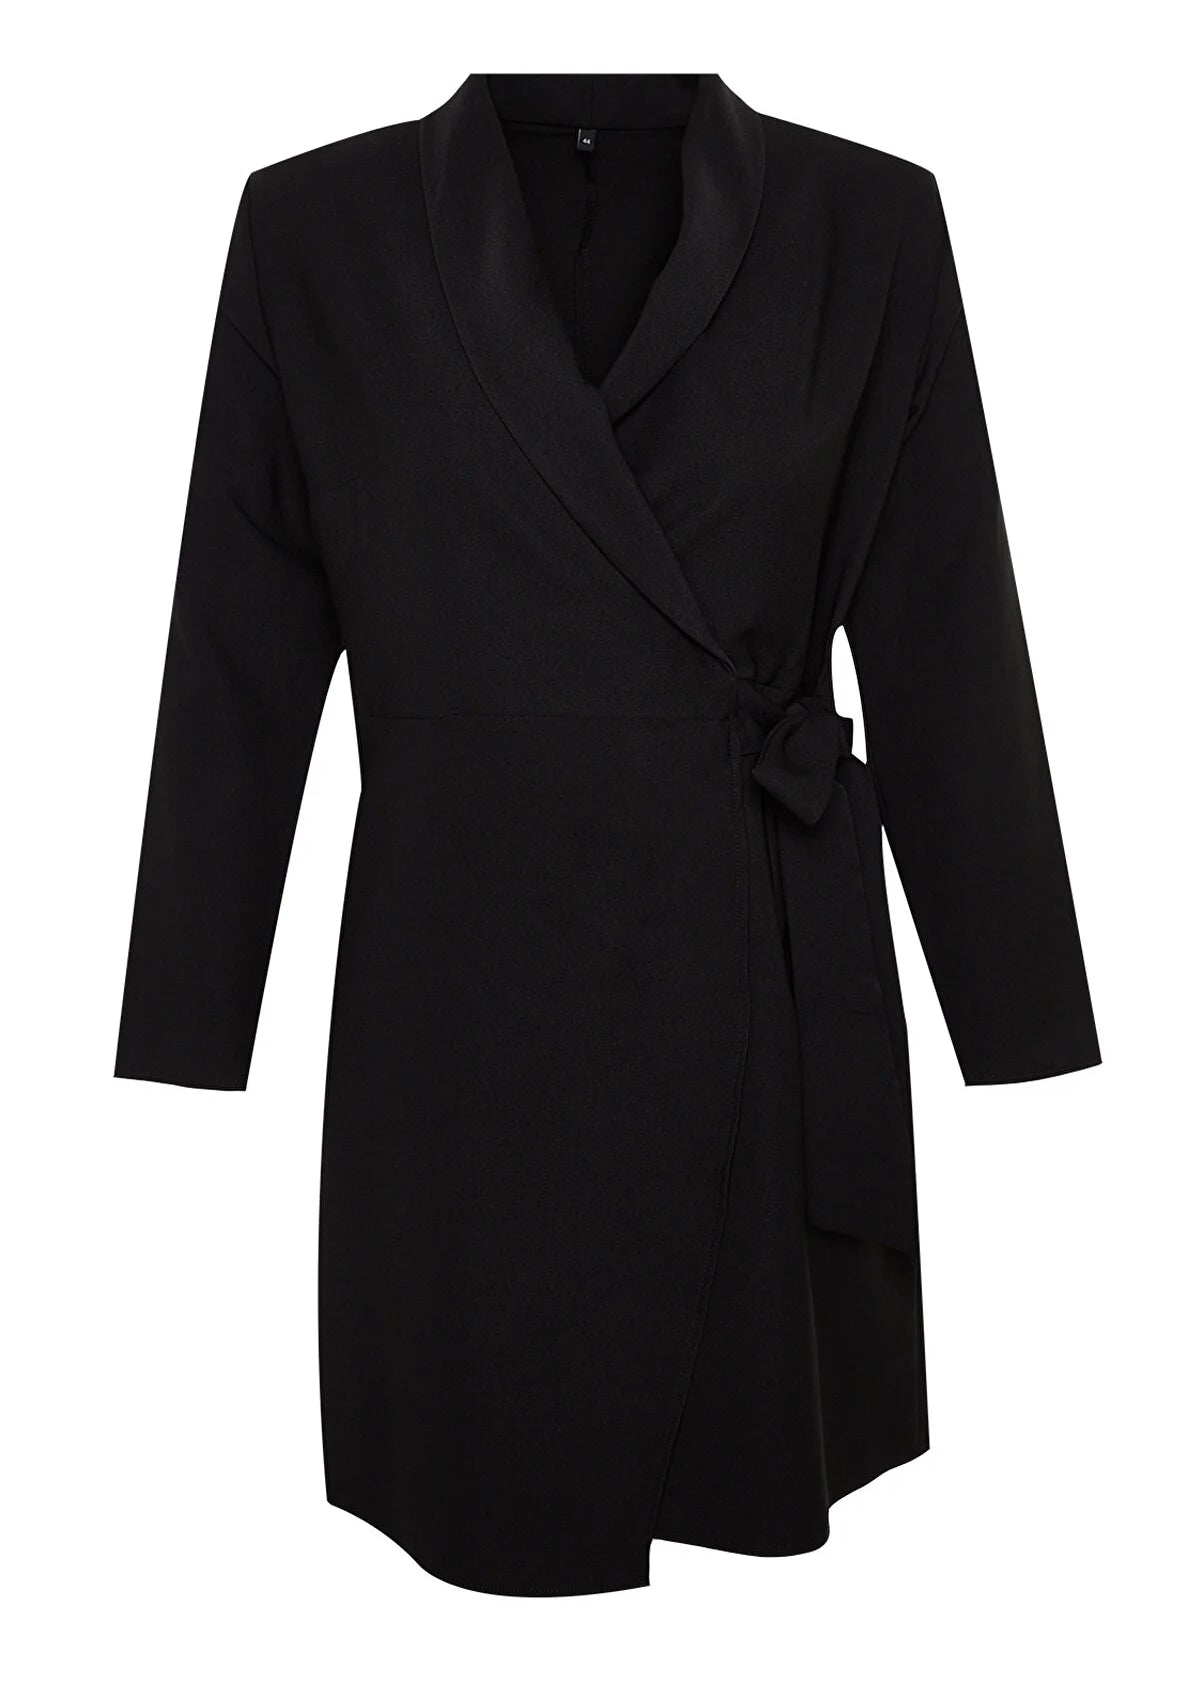 Plus Size Business Blazer Basic Dress - Black